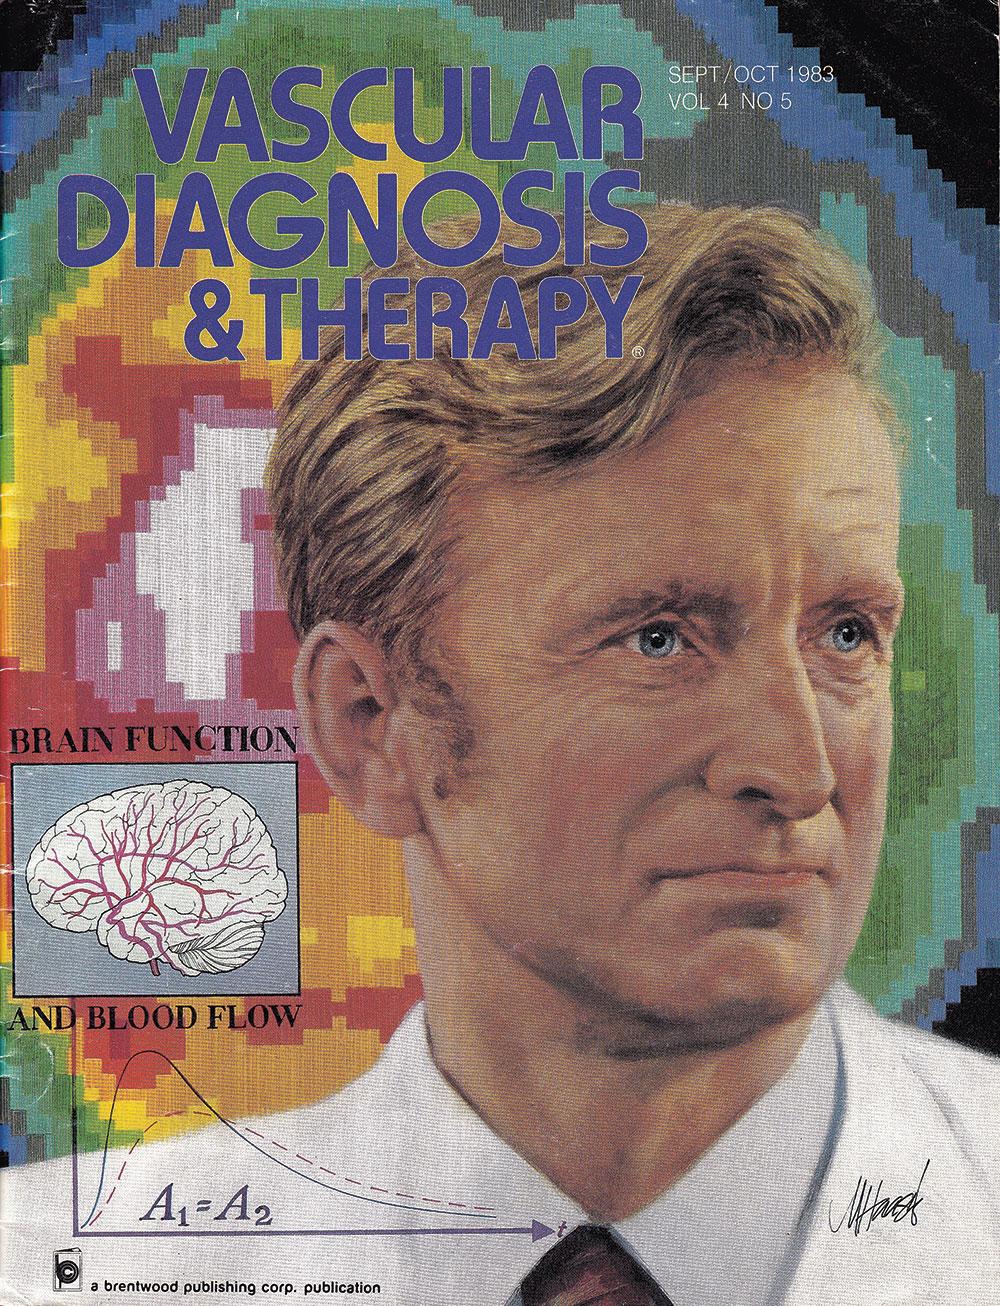 Lassen var i oktober 1983 på forsiden af det amerikanske tidsskrift Vascular Diagnosis & therapy. Det er et tomografisk snit af hjernens regionale blodflow efter inhalation af xenon-133, der vises i baggrunden.